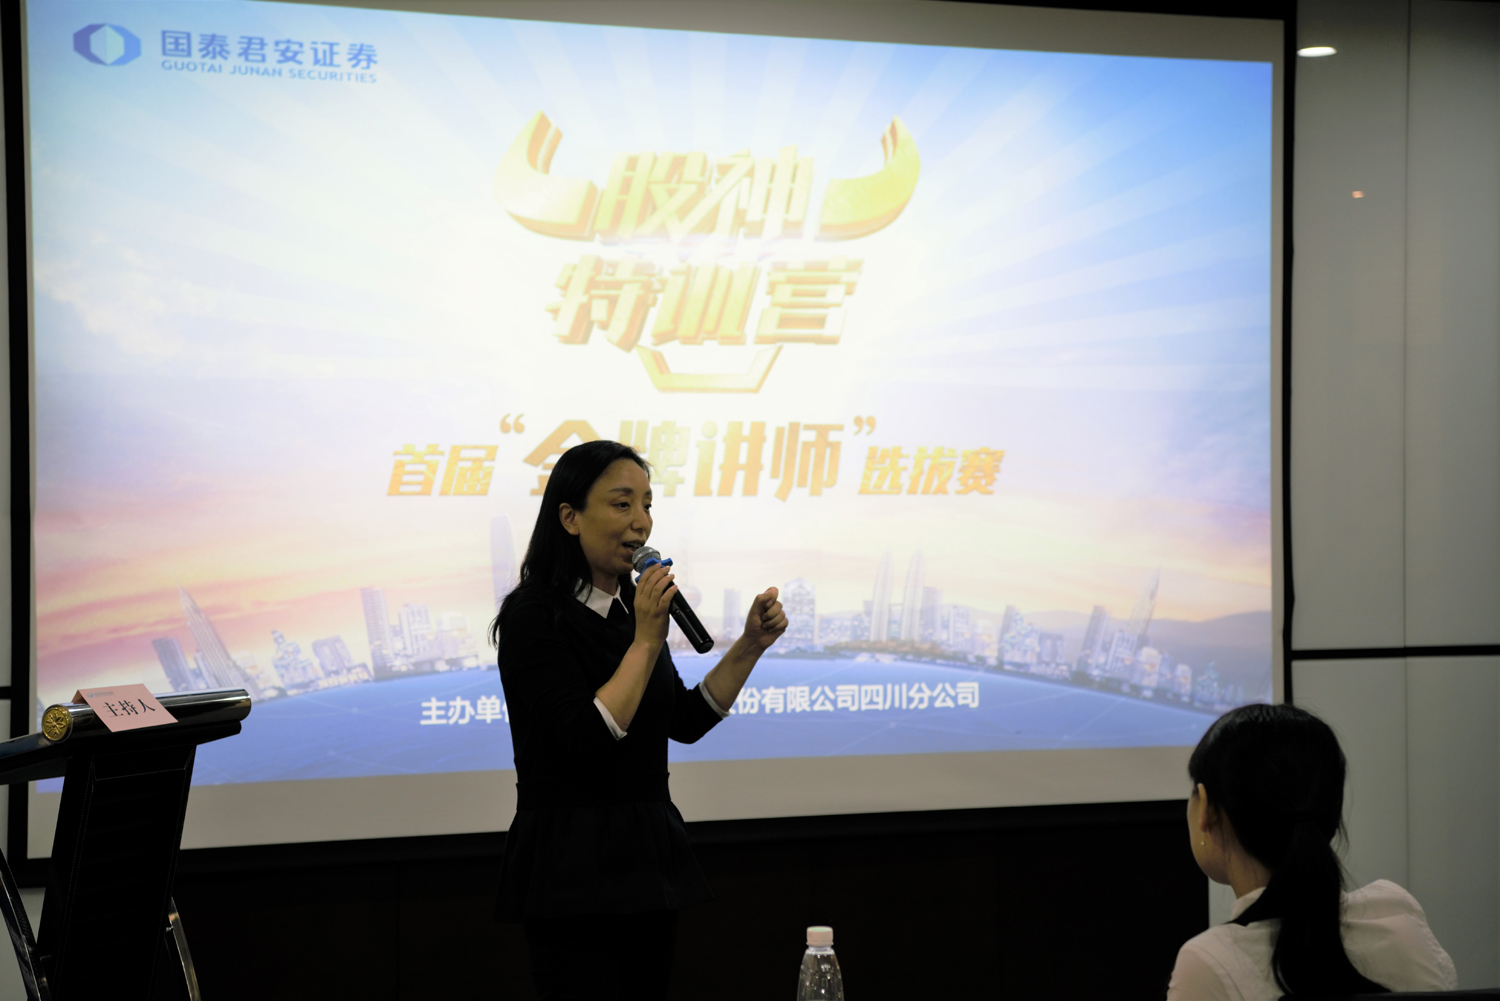 国泰君安四川分公司举办首届金牌讲师选拔赛